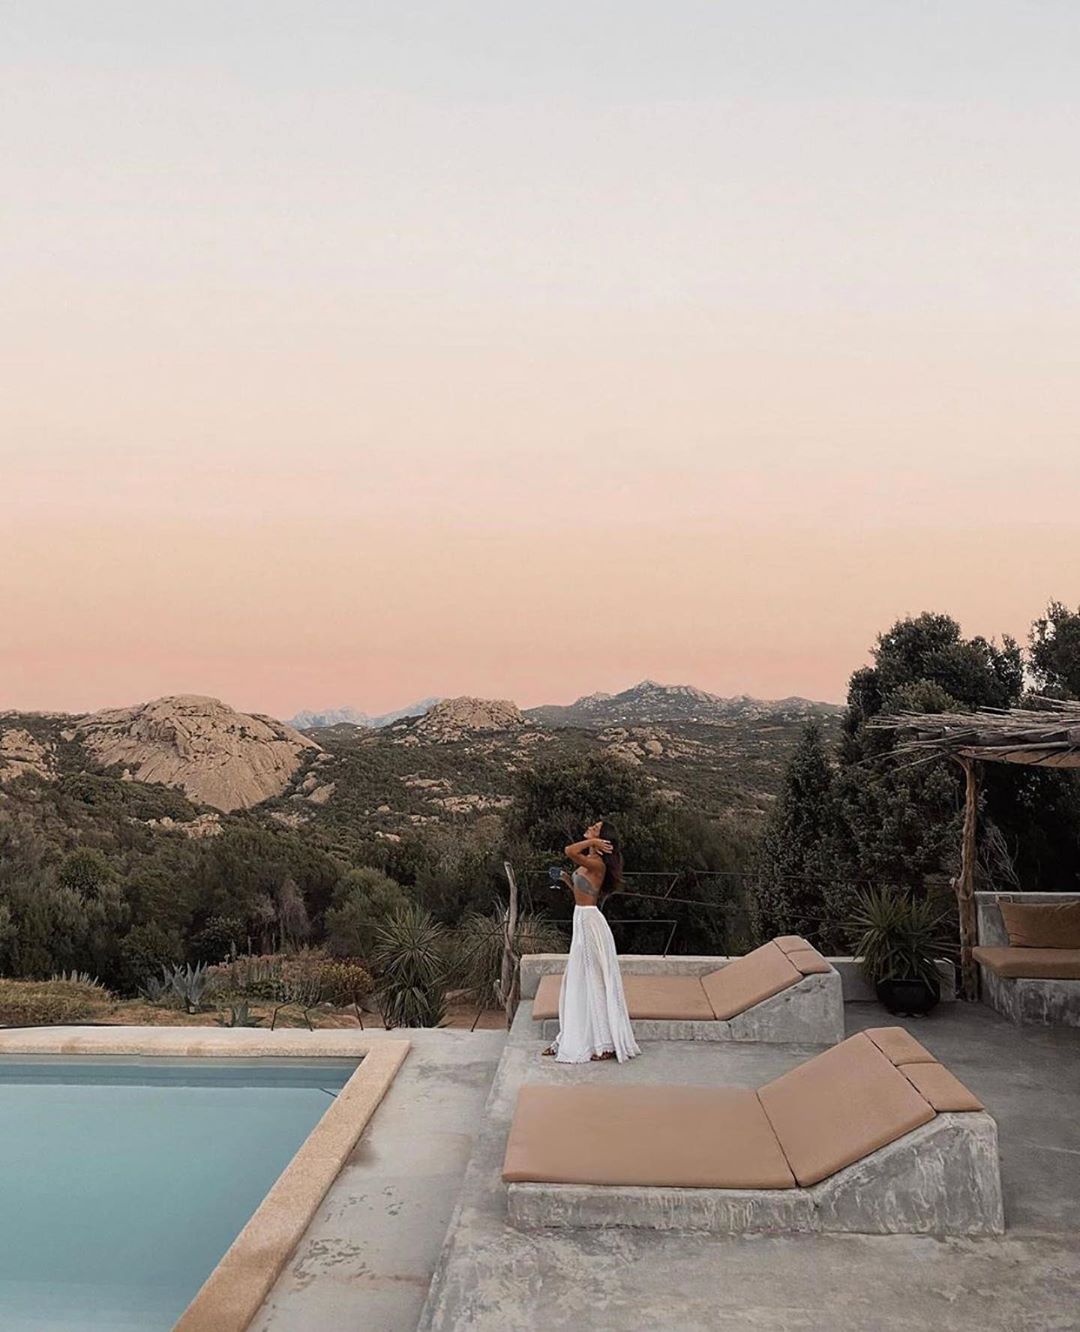 Charo Ruiz Ibiza - Gorgeous @sara_rossetto enjoying a breathtaking sunset in Sardinia 🌅💫 Guapísima Sara Nicole Rossetto disfrutando de un atardecer de ensueño en Cerdeña. #SUMMER2020 #WELOVESUMMER  #s...